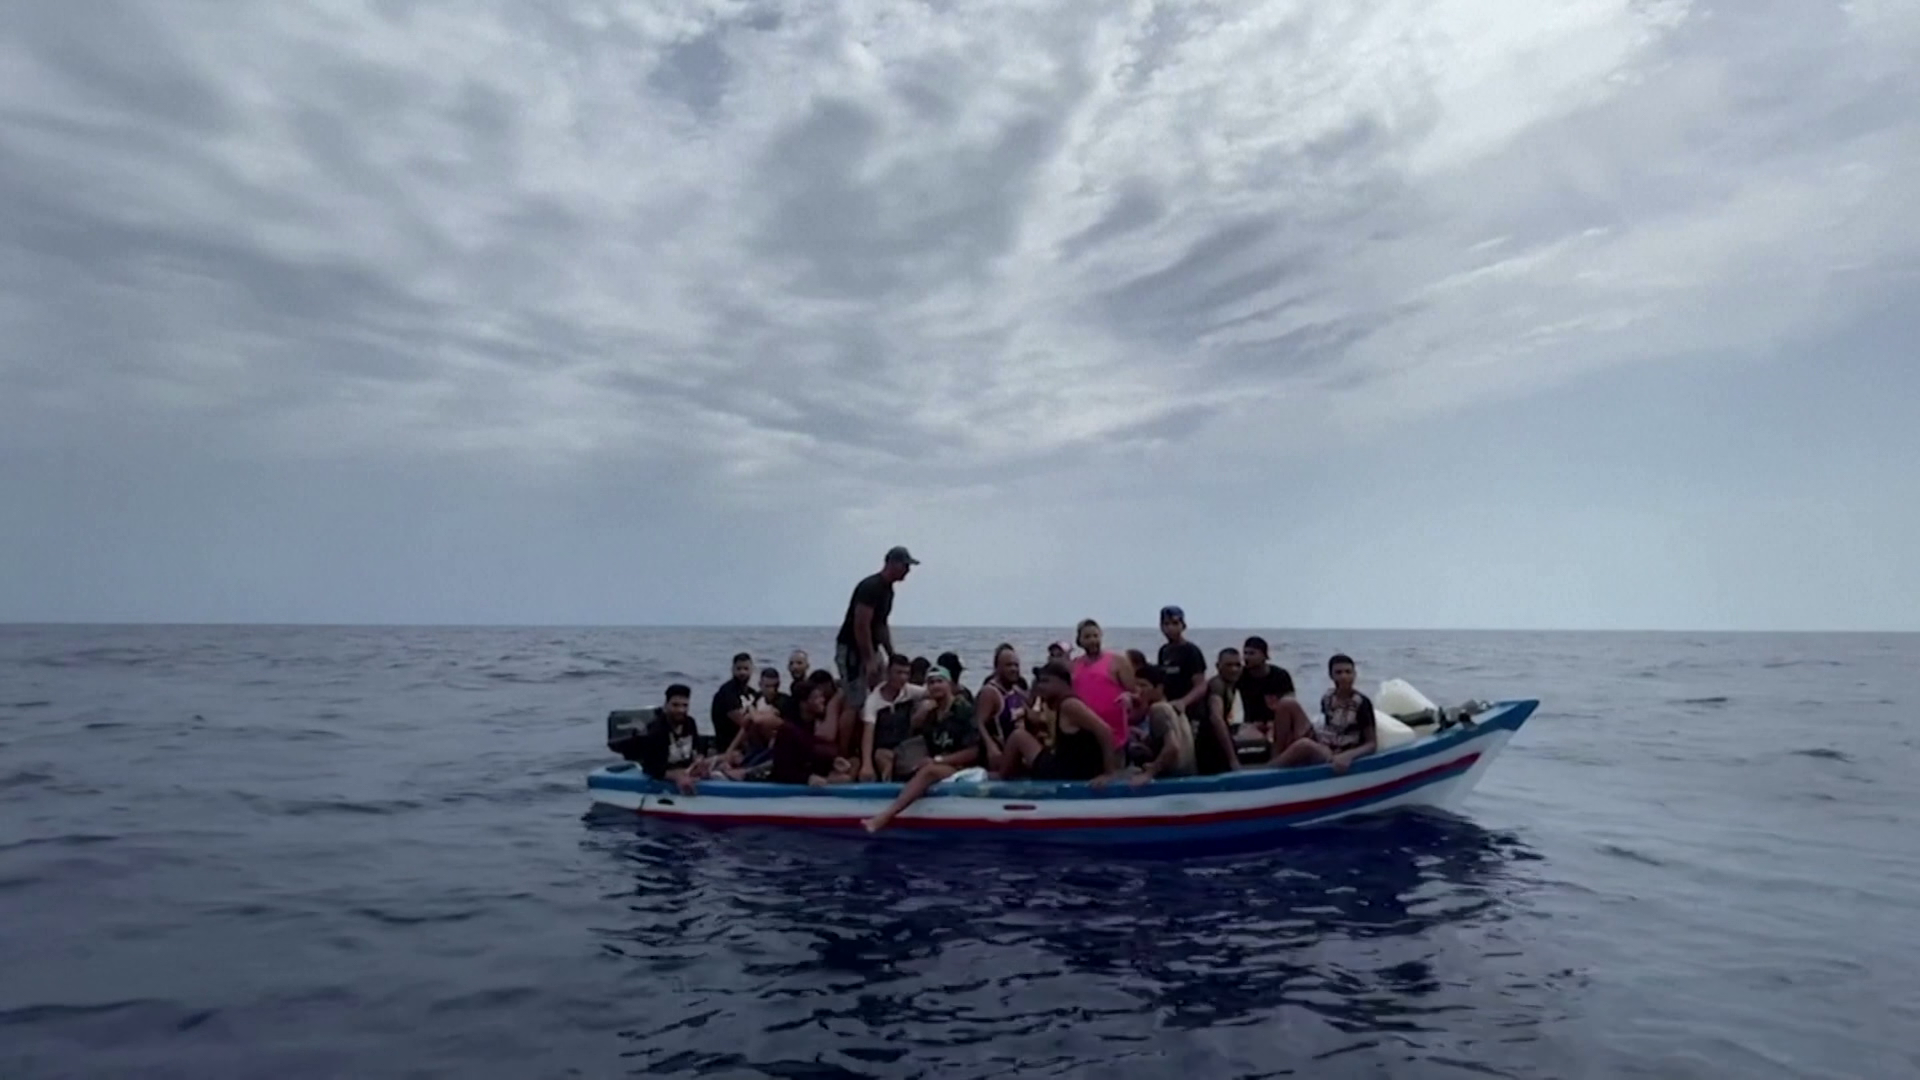 Újabb migránsok érkeztek Lampedusára, már szűrni sem tudják a menekülteket